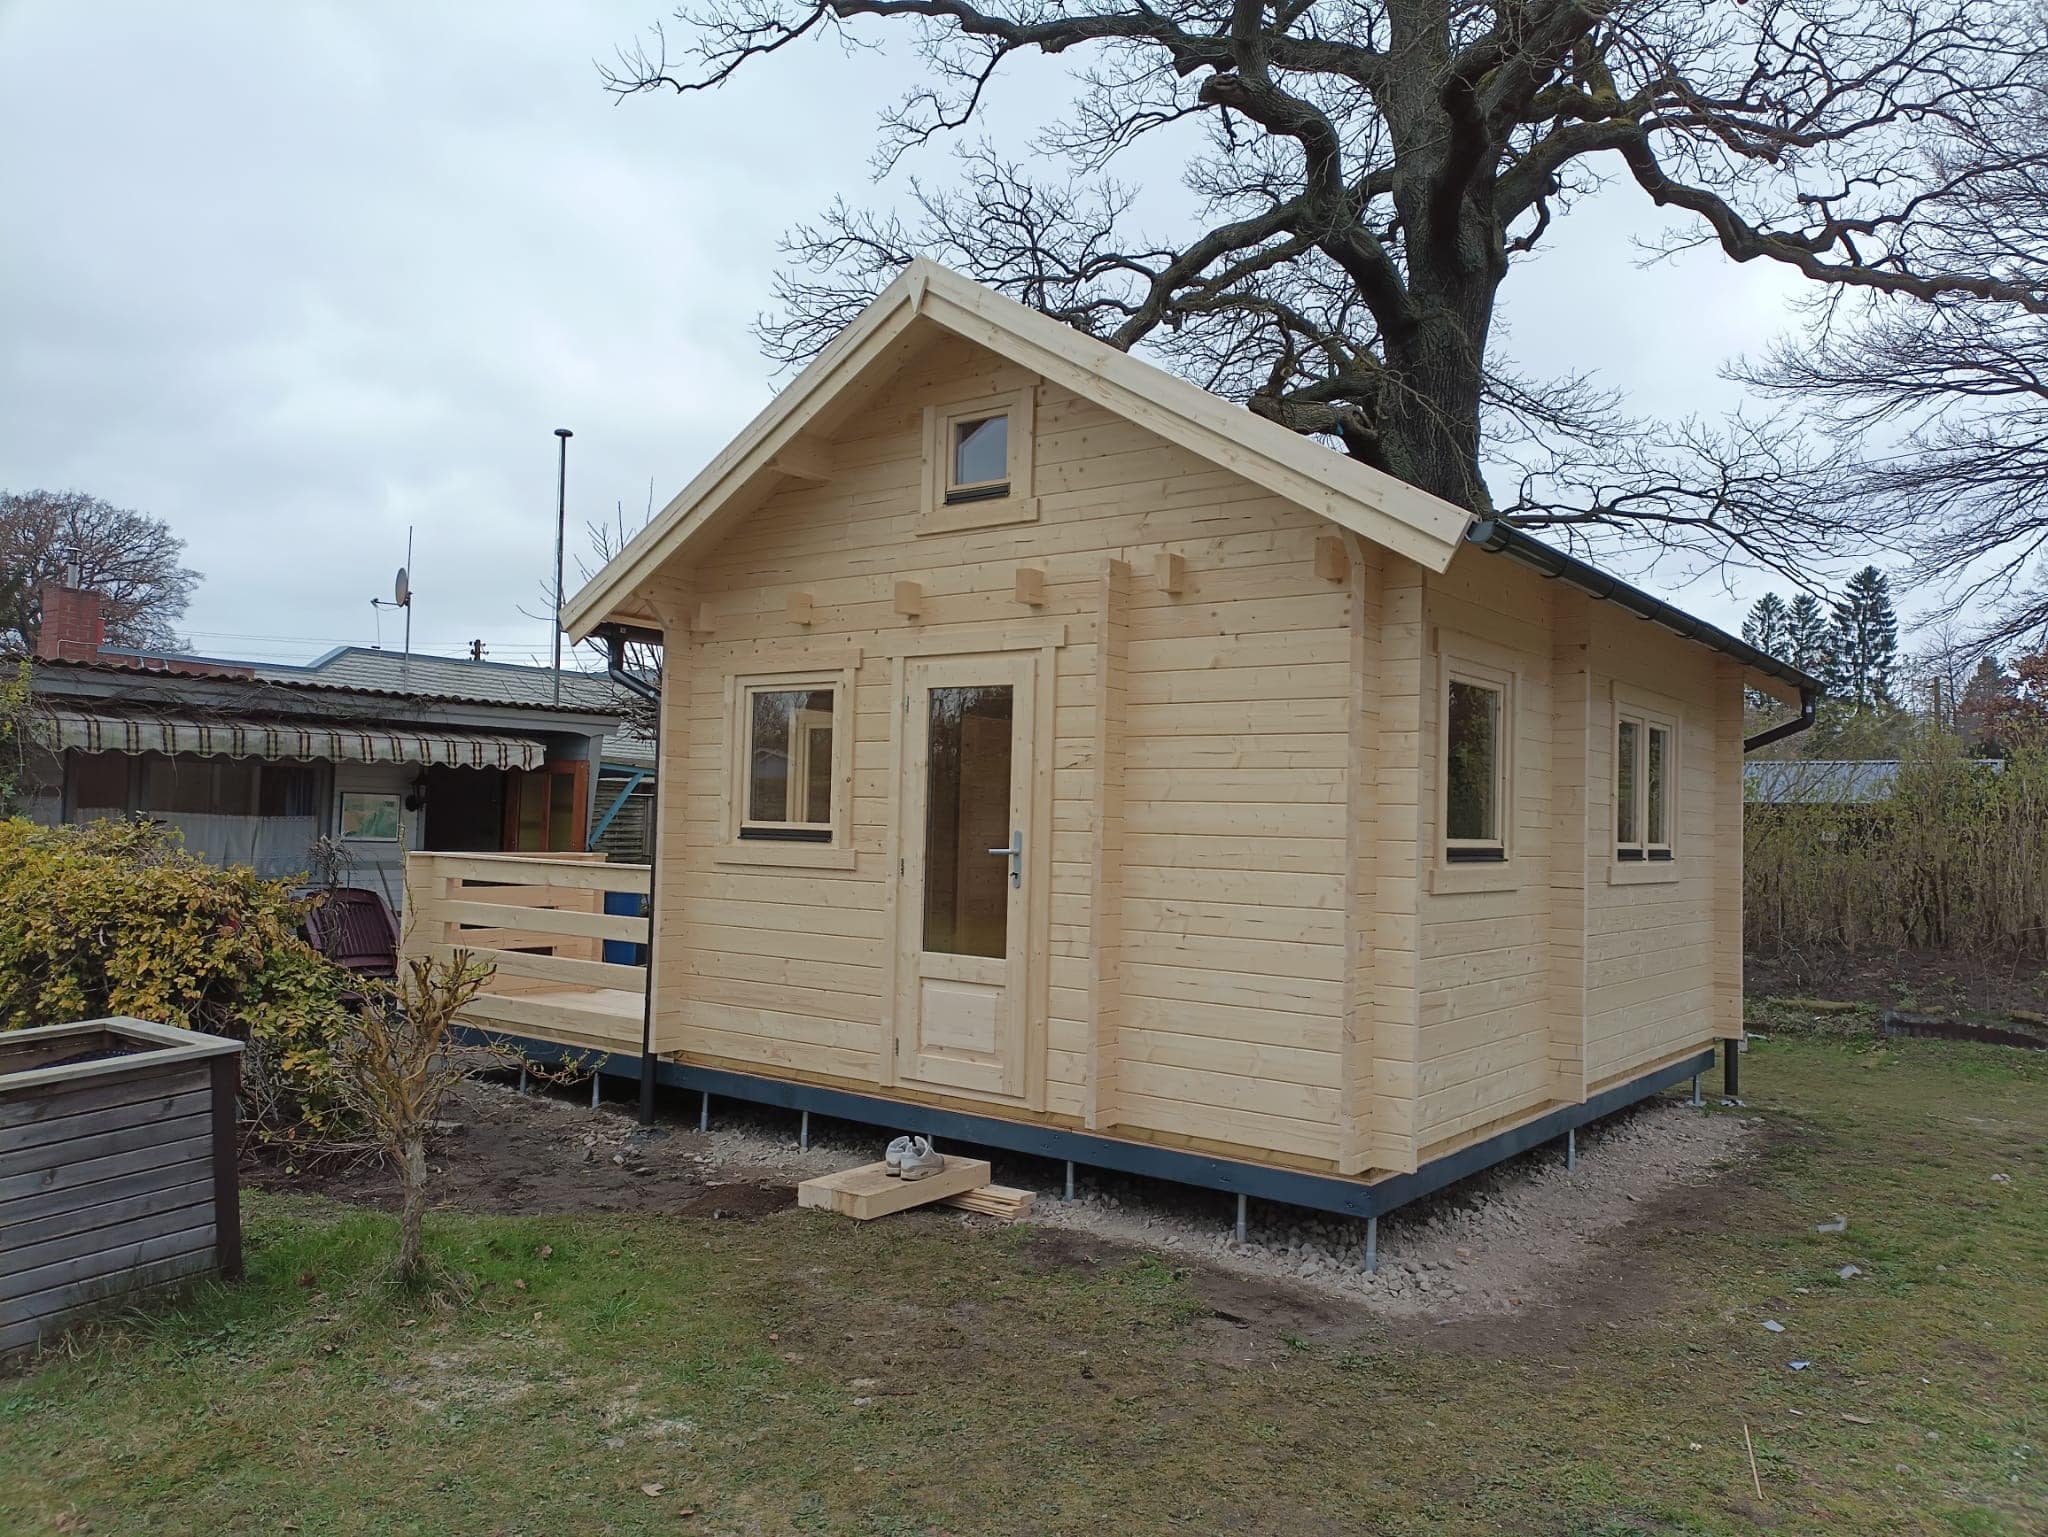 Neu errichtetes Holzblockhaus mit Veranda im Hinterhof.